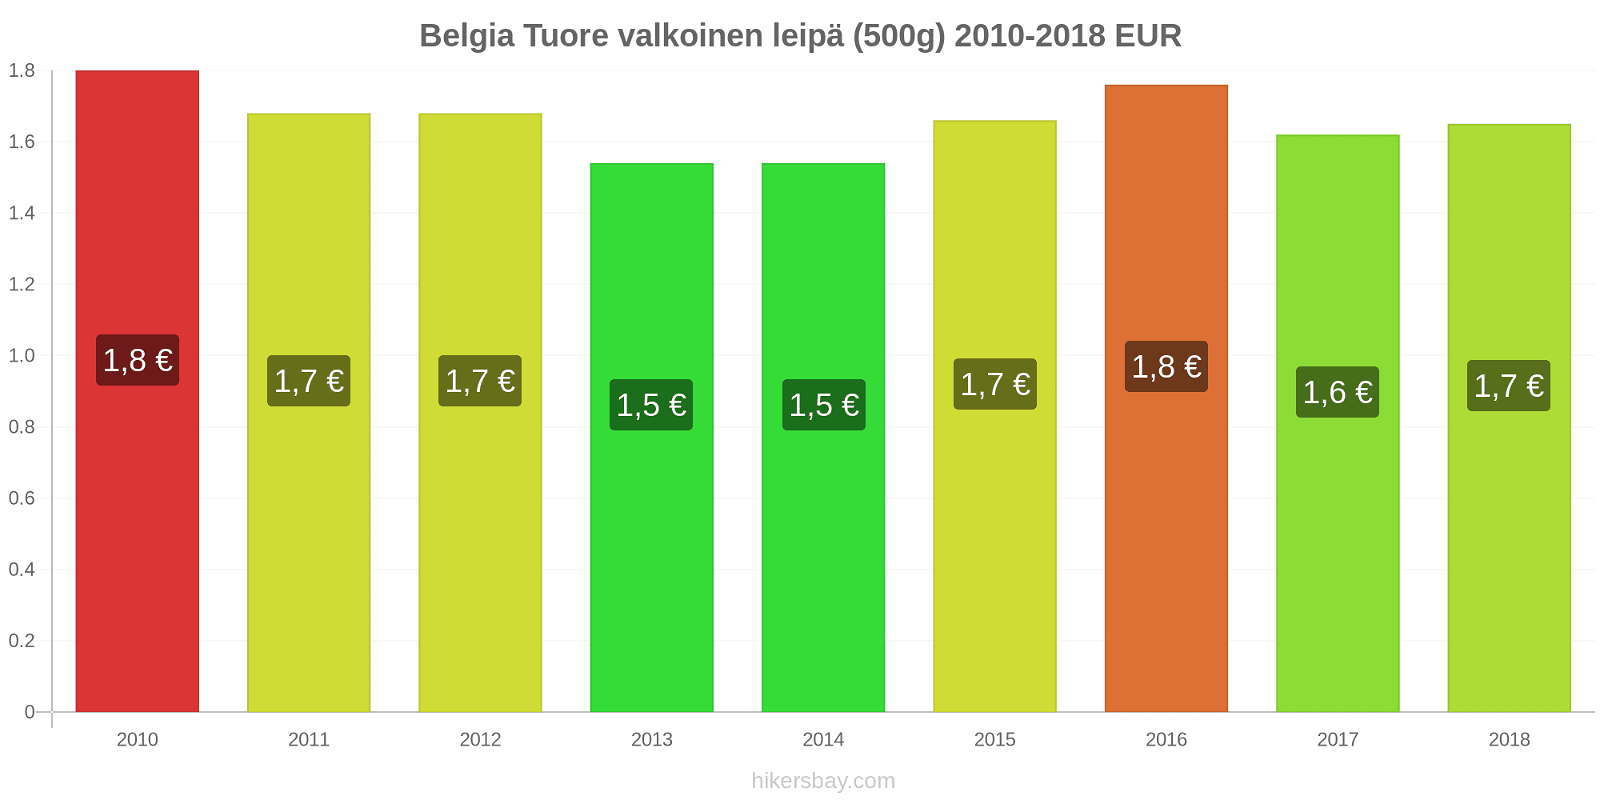 Belgia hintojen muutokset Tuore valkoinen leipä (500g) hikersbay.com